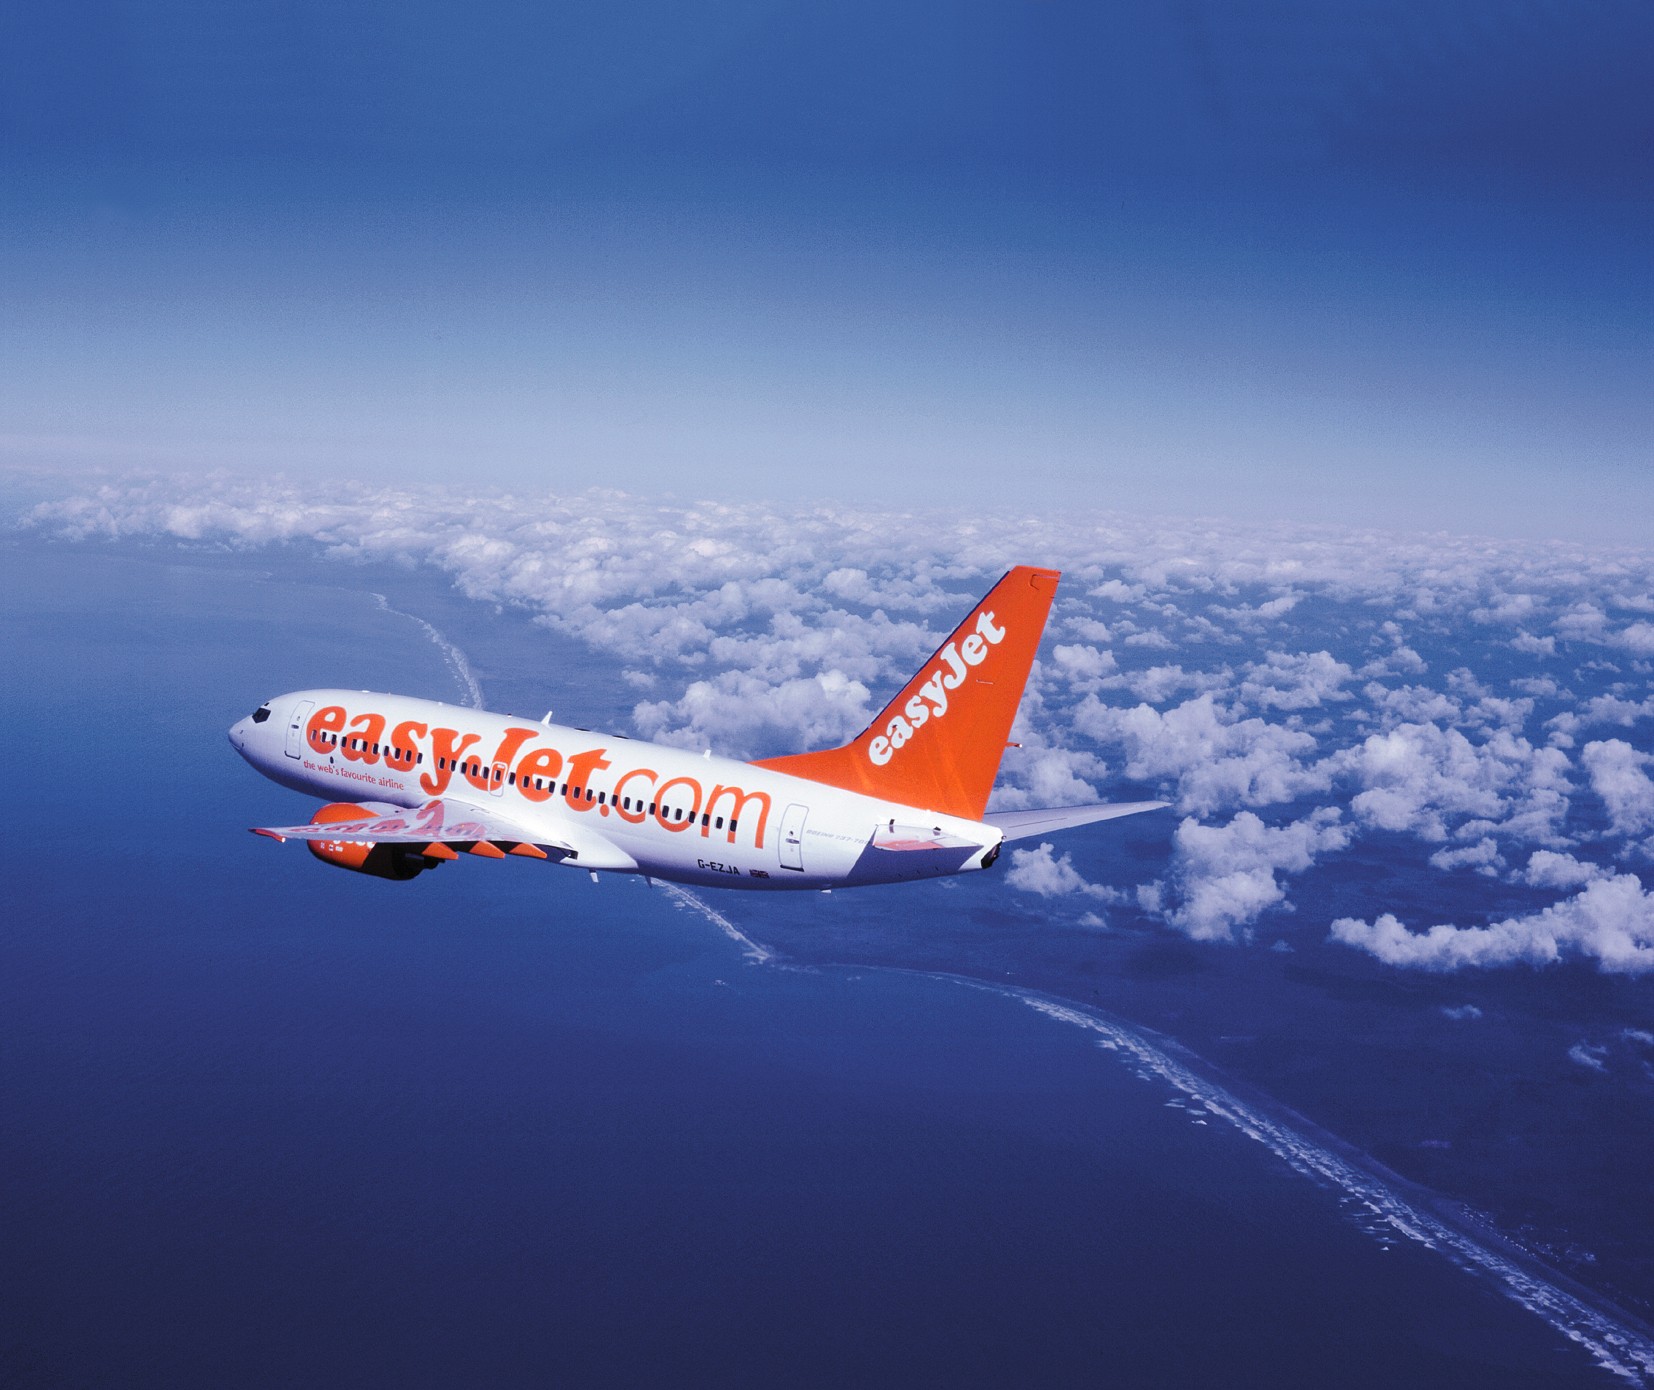 EasyJet introduce la pre-assegnazione dei posti su tutti i voli da novembre 2012